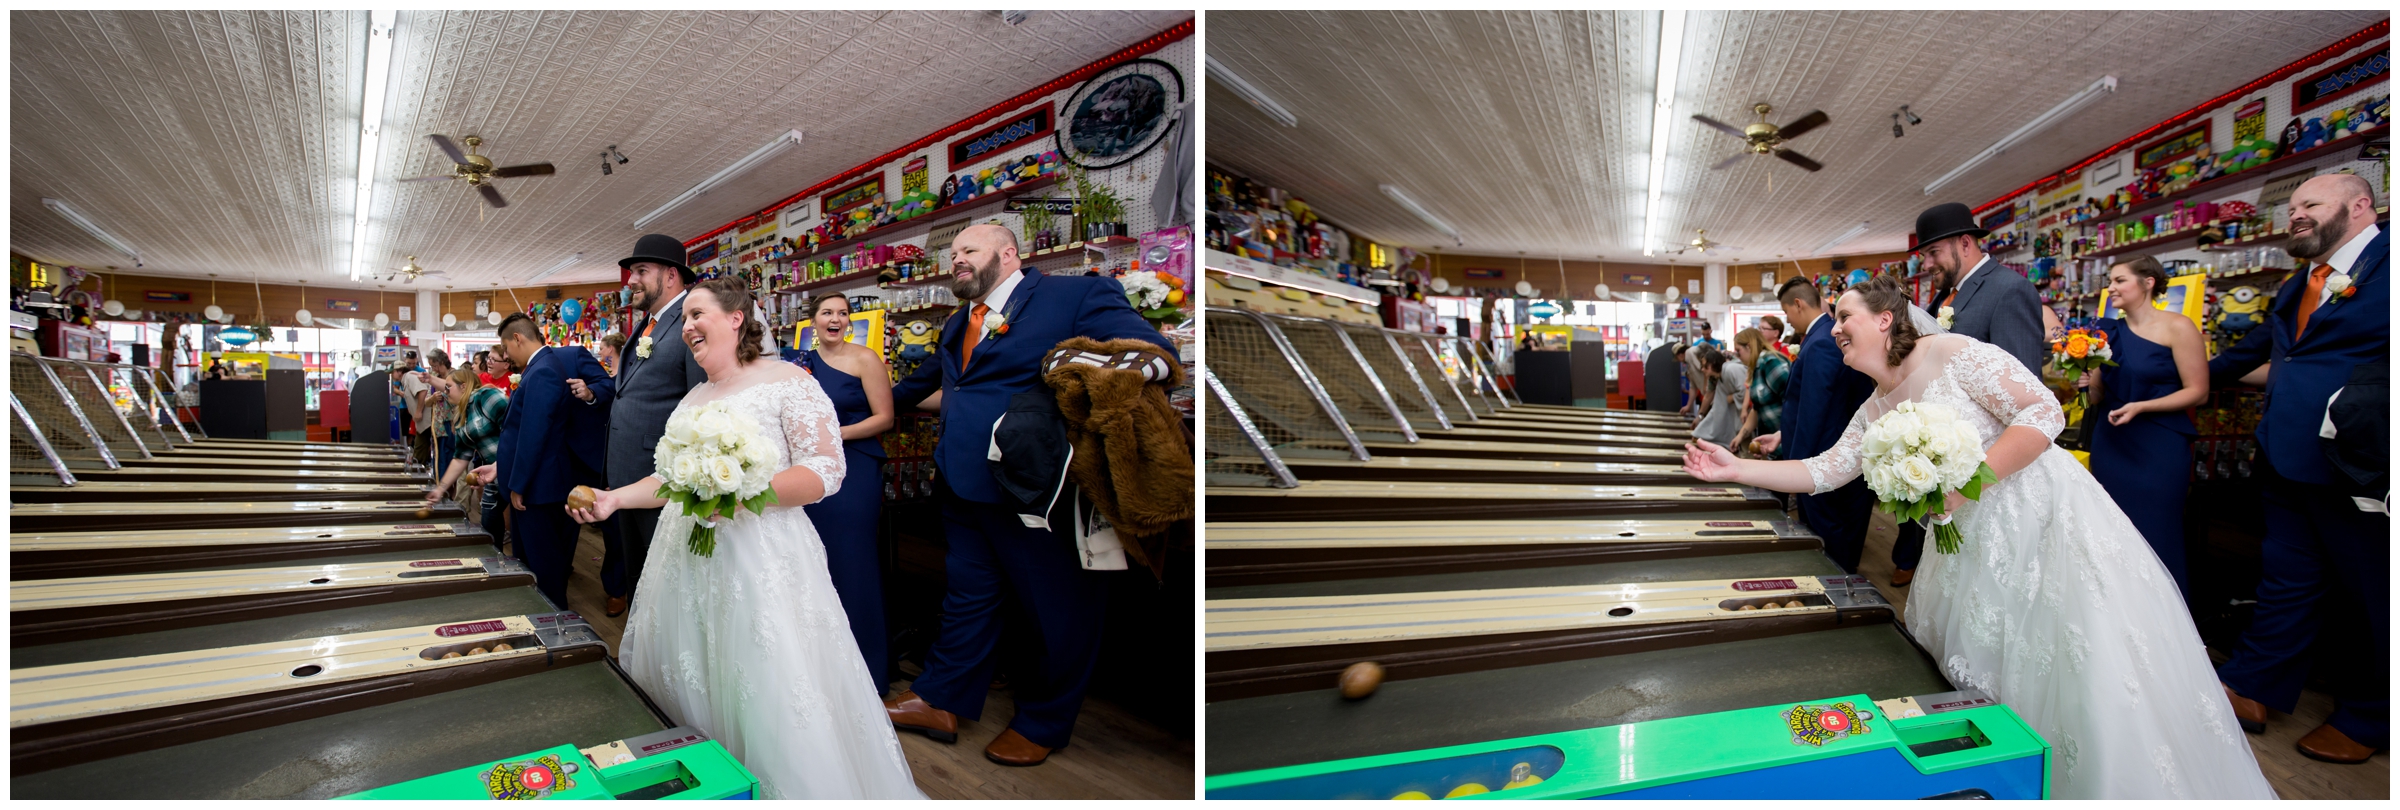 Colorado Springs wedding portraits at the penny arcade 